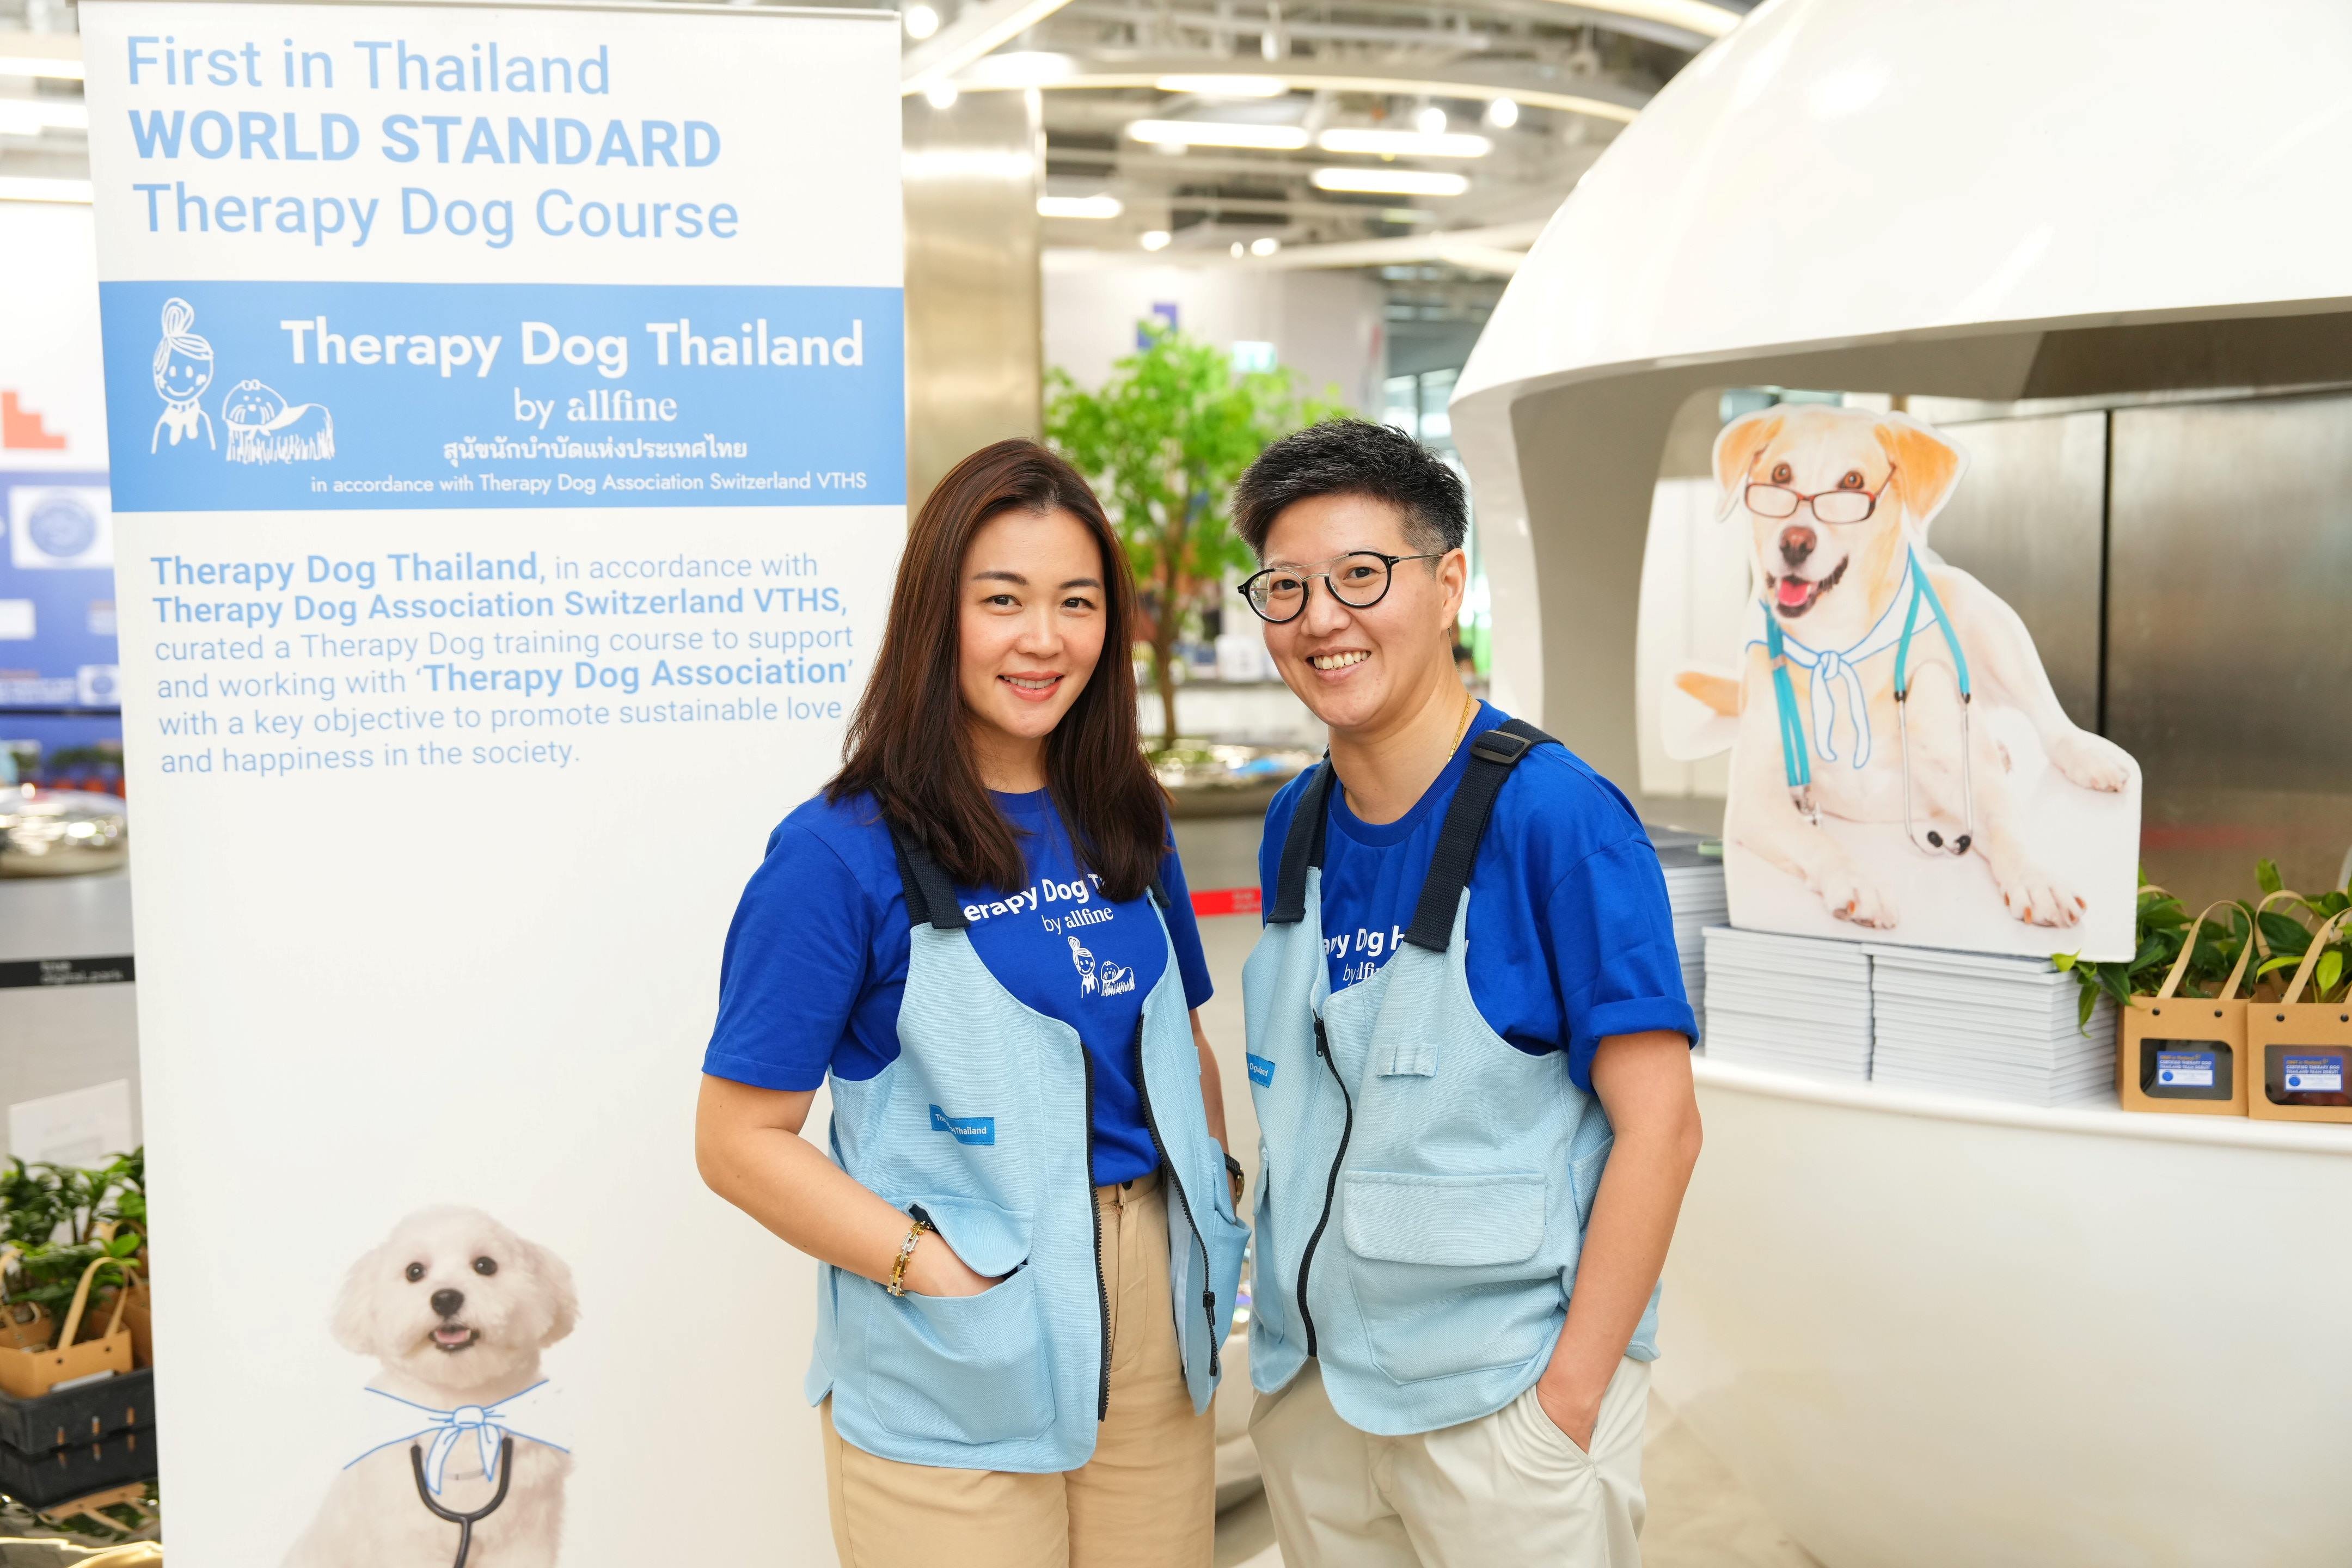 มิติใหม่แห่งวงการบำบัด เปิดตัว “ทีมสุนัขนักบำบัดฯ” รุ่นแรกของไทย